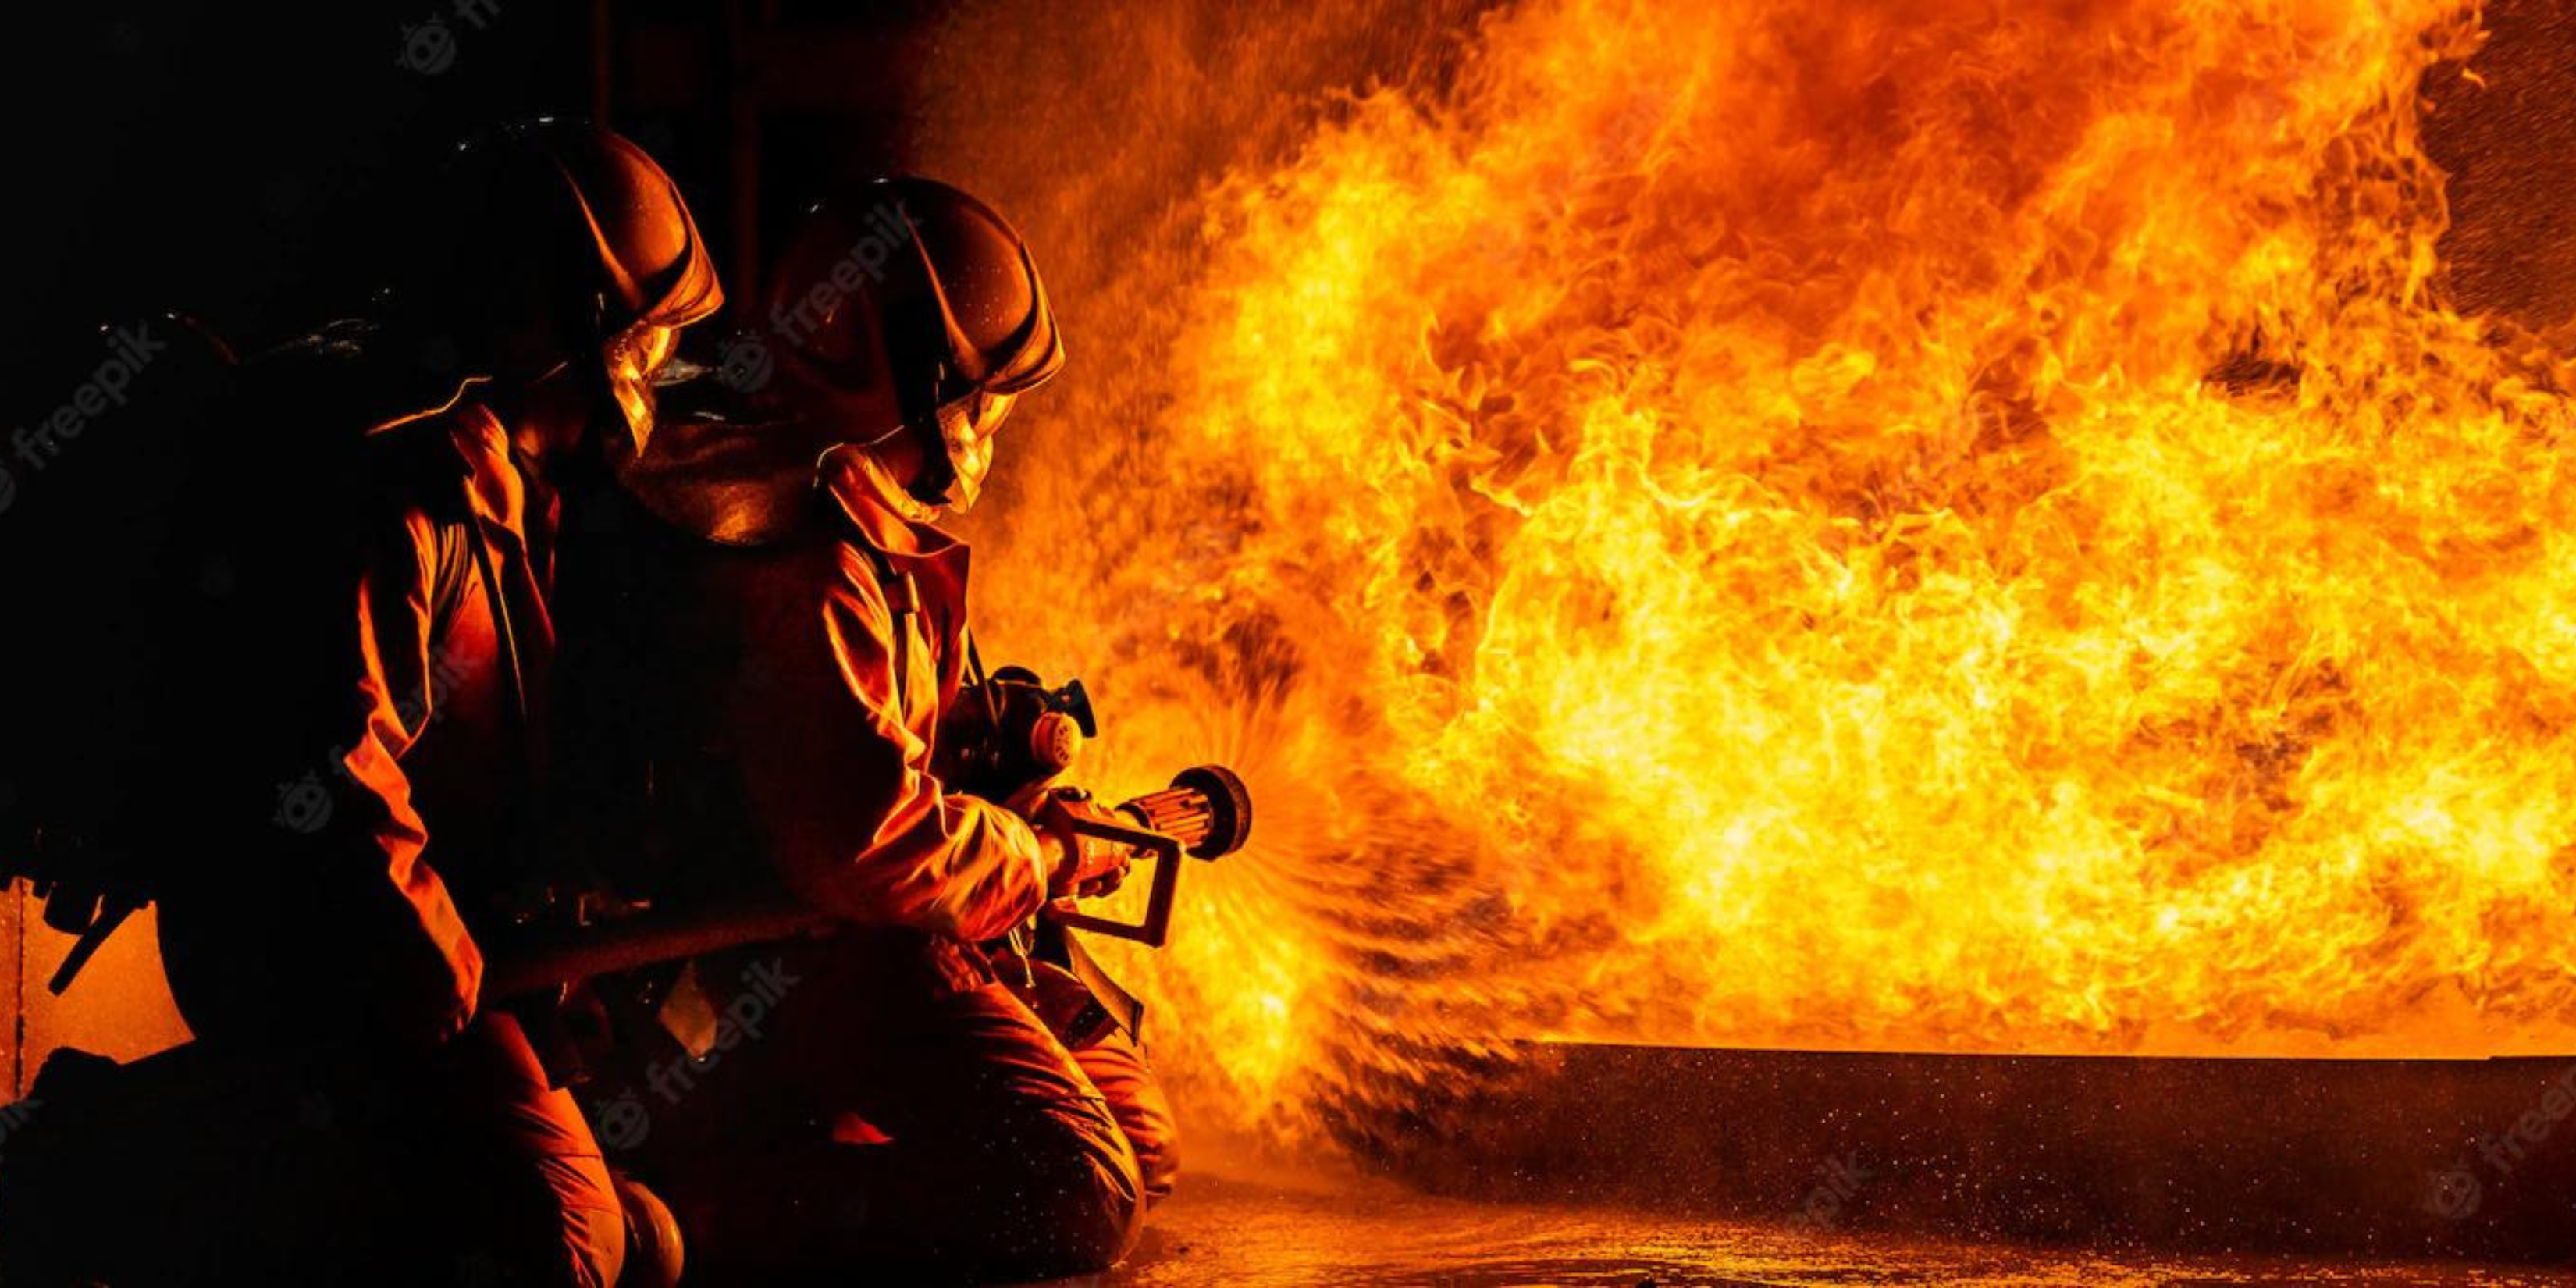 Osha-Fire-Safety-Training-Level-2-advance-OSHAS